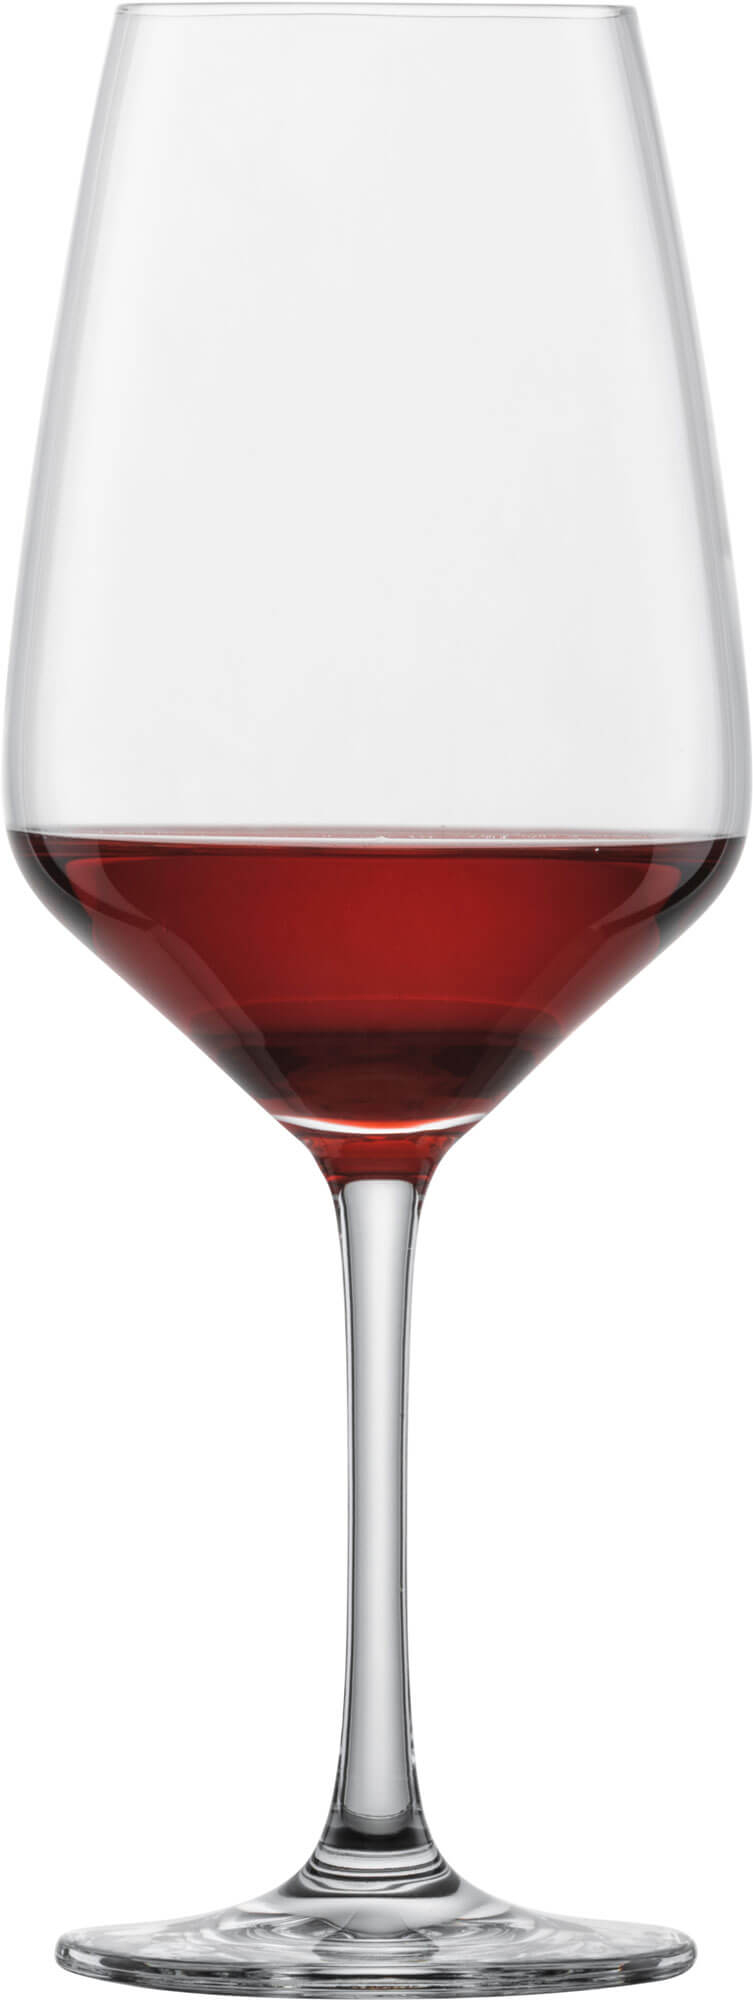 Red wine glass Taste, Schott Zwiesel - 497ml (6 pcs.)